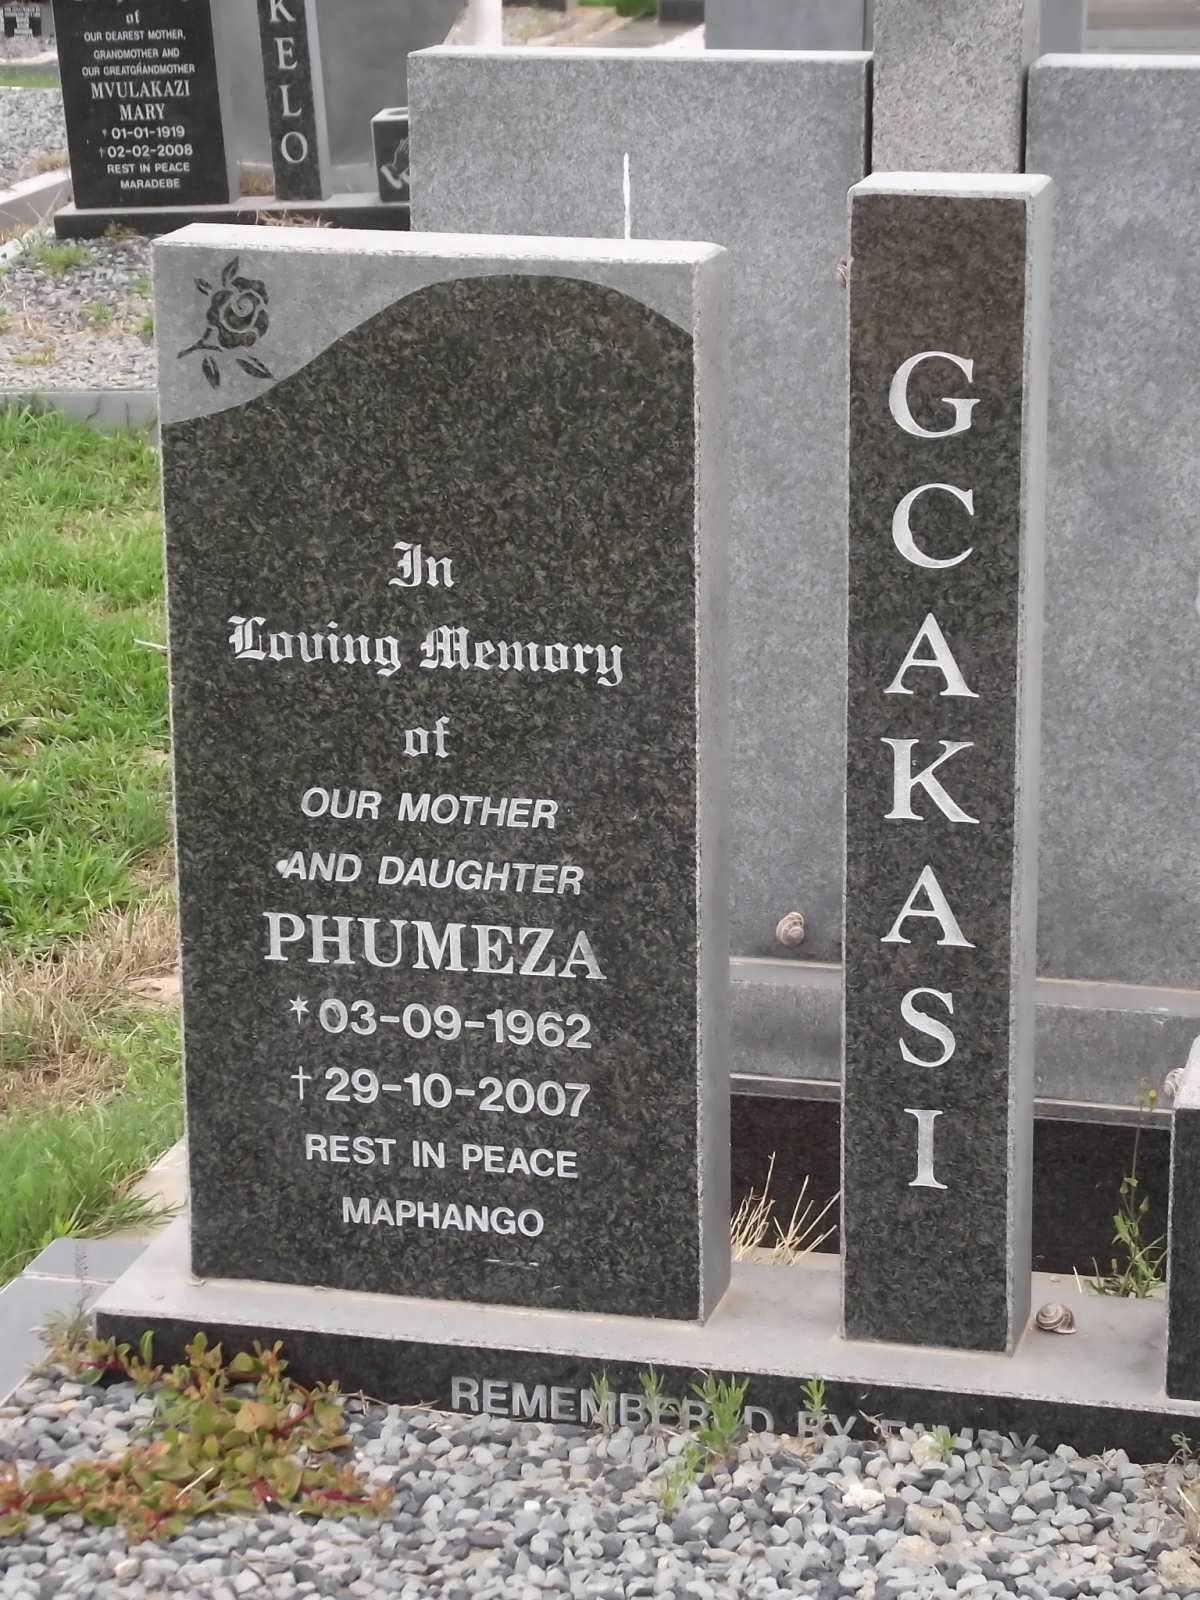 GCAKASI Phumeza 1962-2007